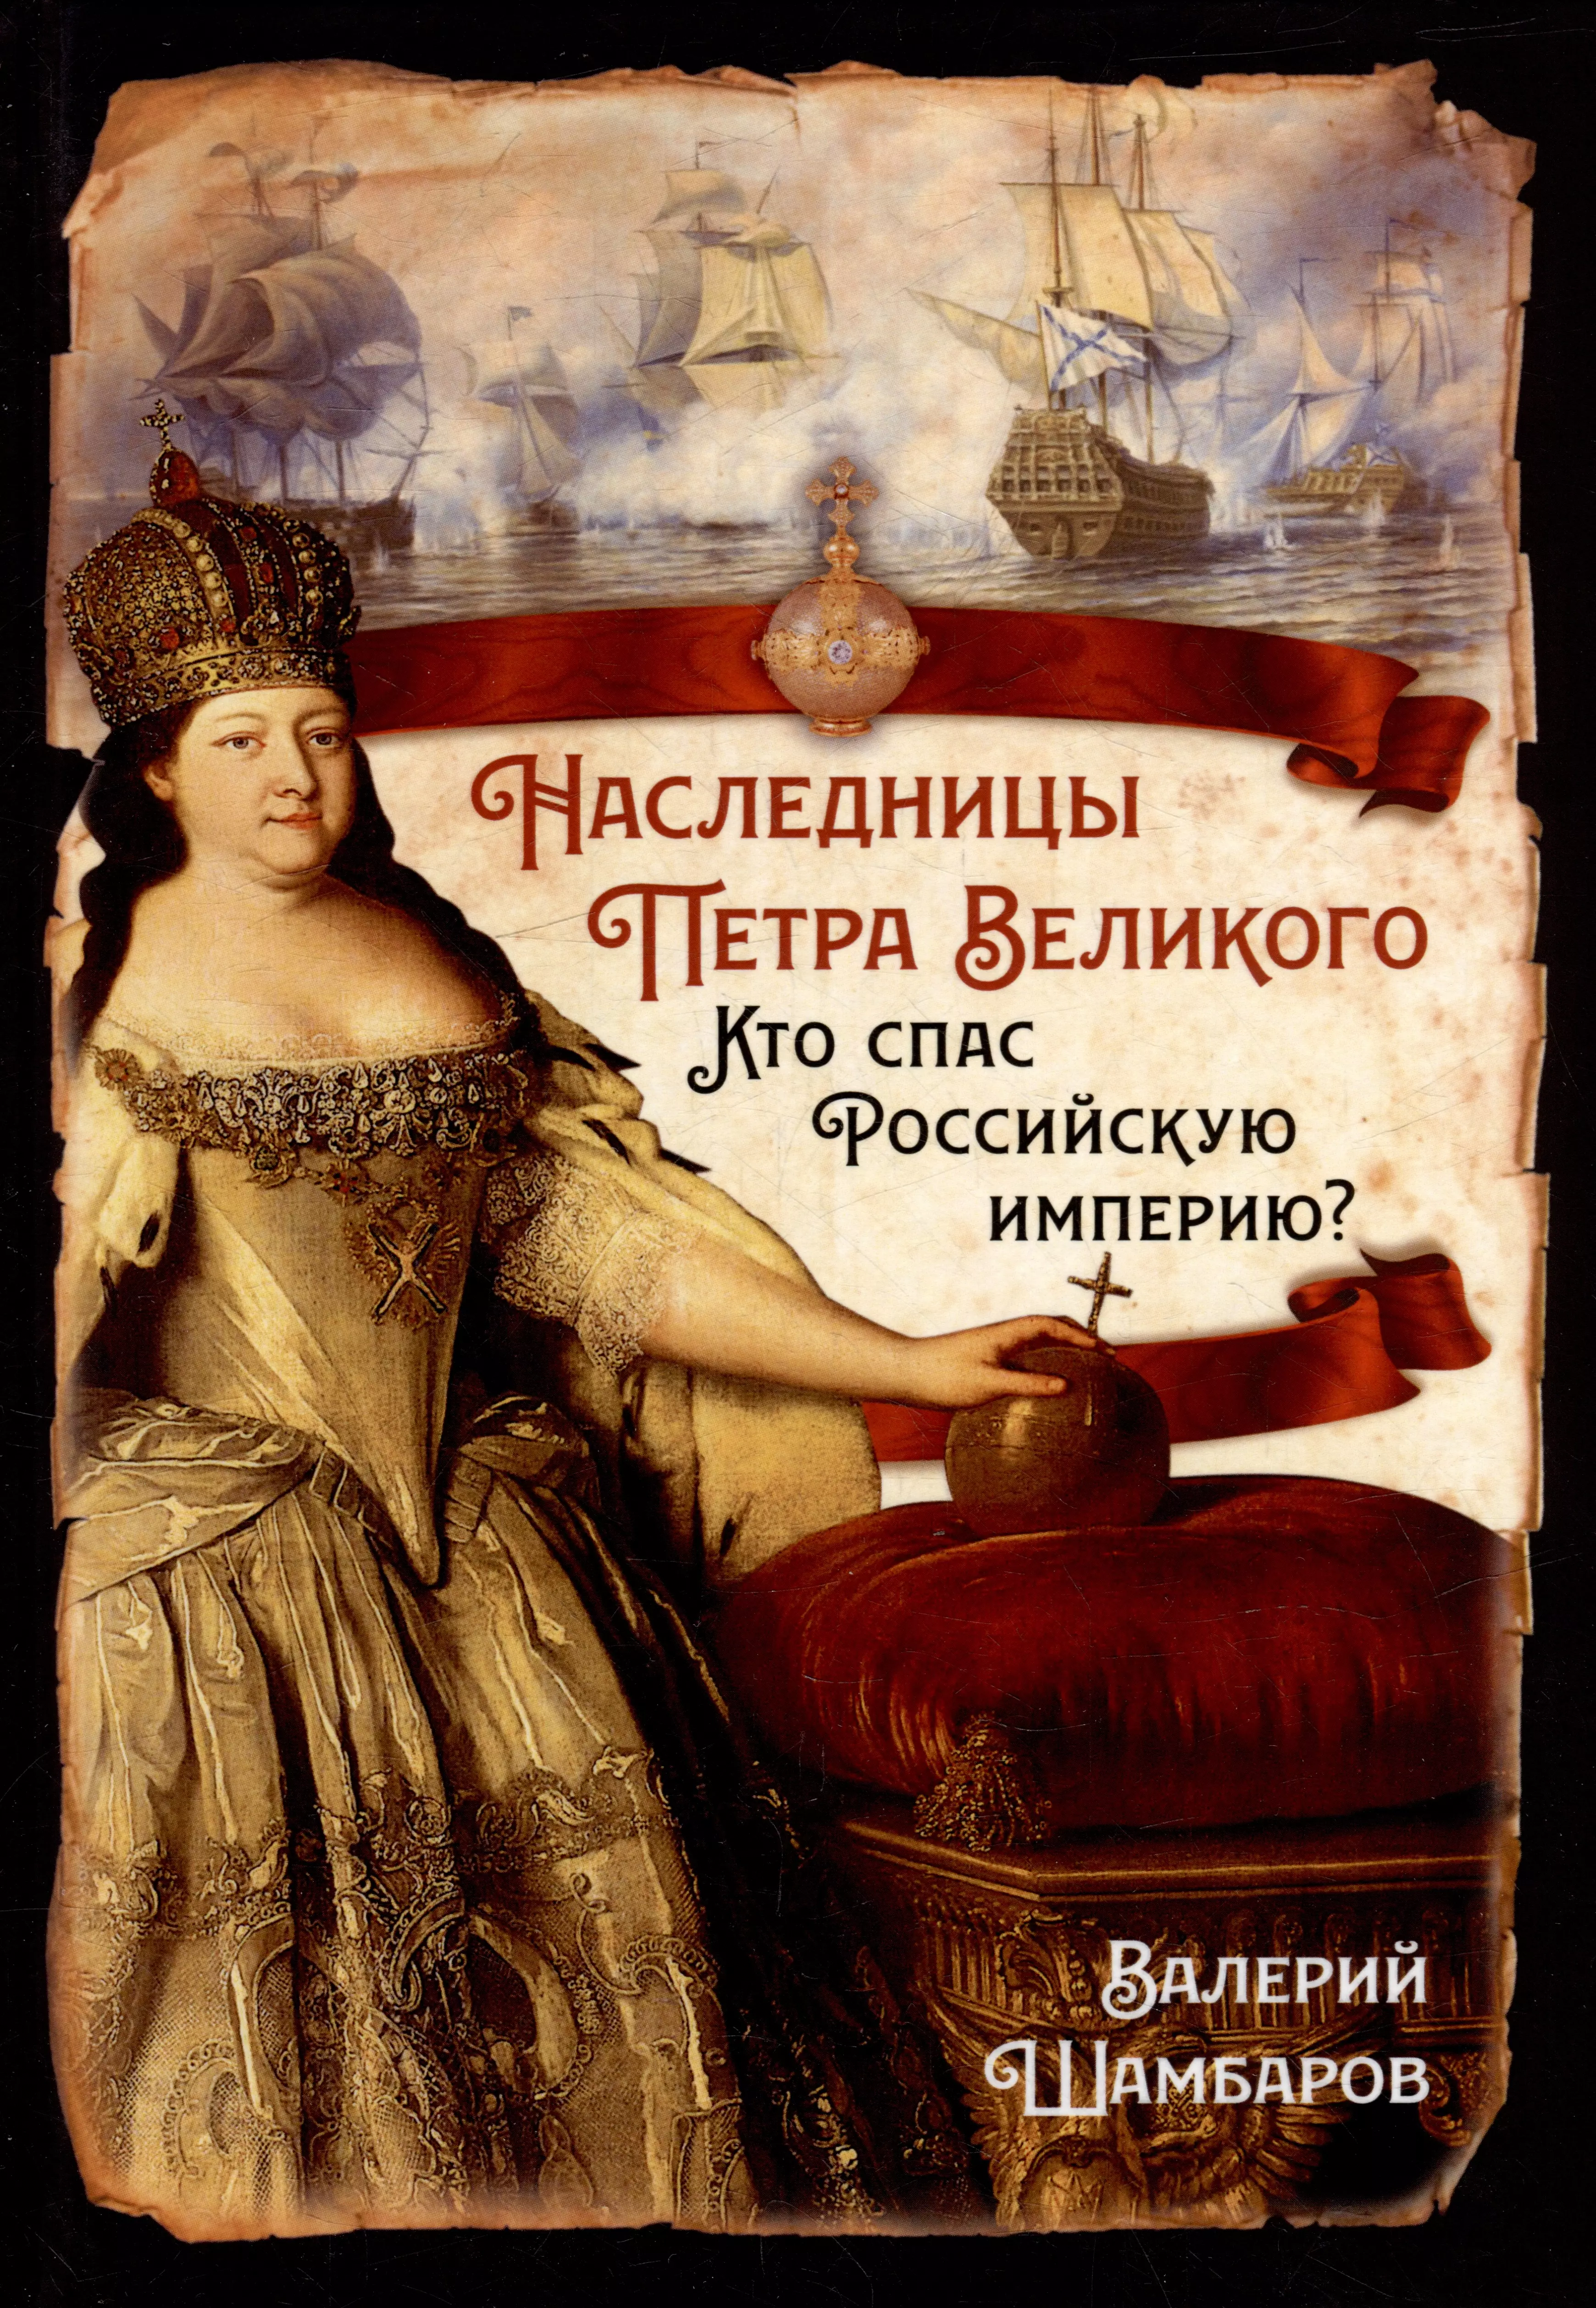 Шамбаров Валерий Евгеньевич - Наследницы Петра Великого. Кто спас Российскую империю?